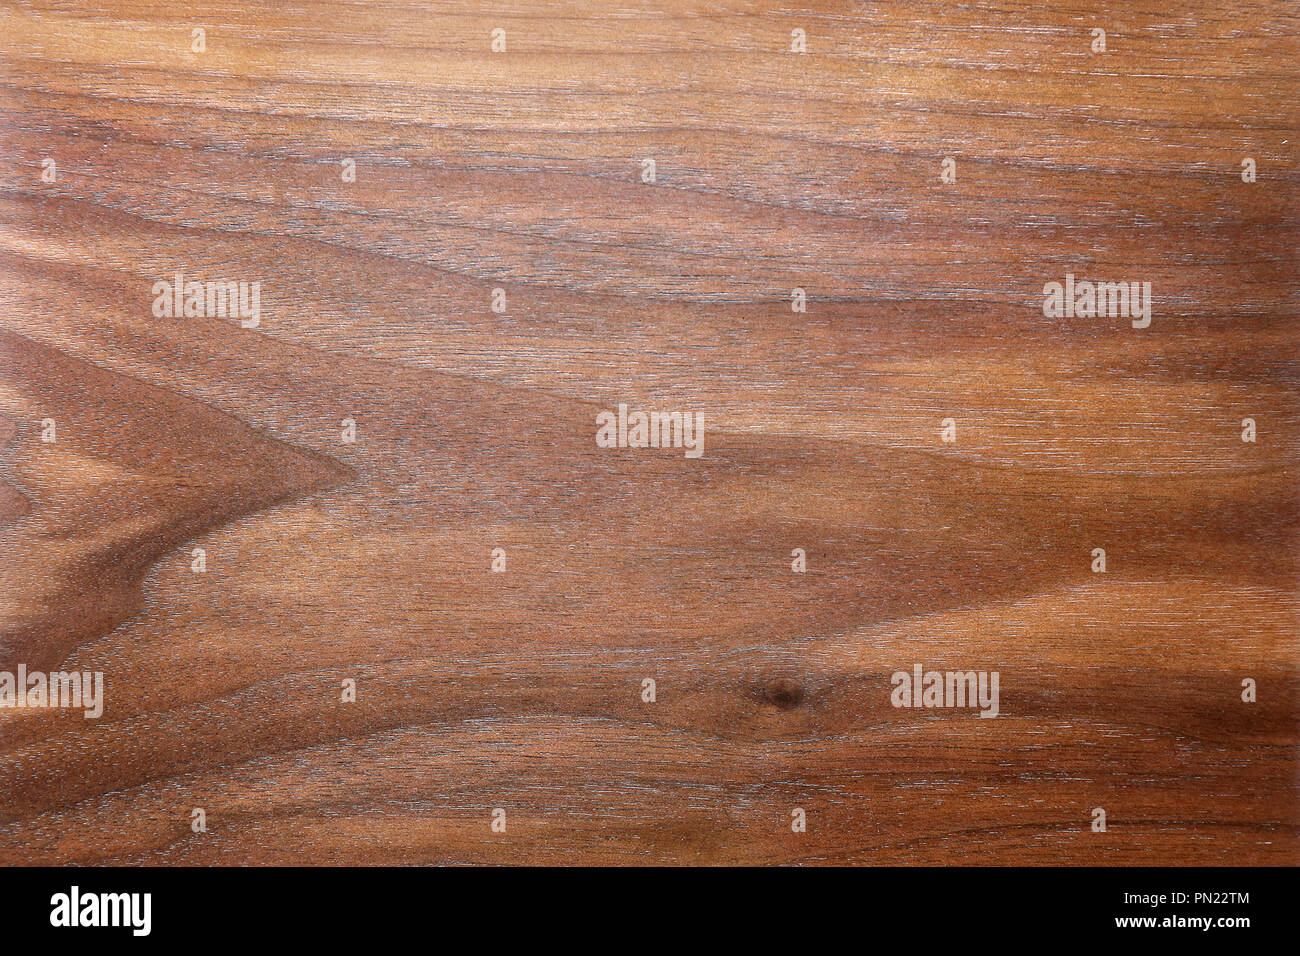 Ein Hintergrund der Reichen, braun gemustert und strukturierte Holzmaserung einer Planke aus Nussbaum. Stockfoto